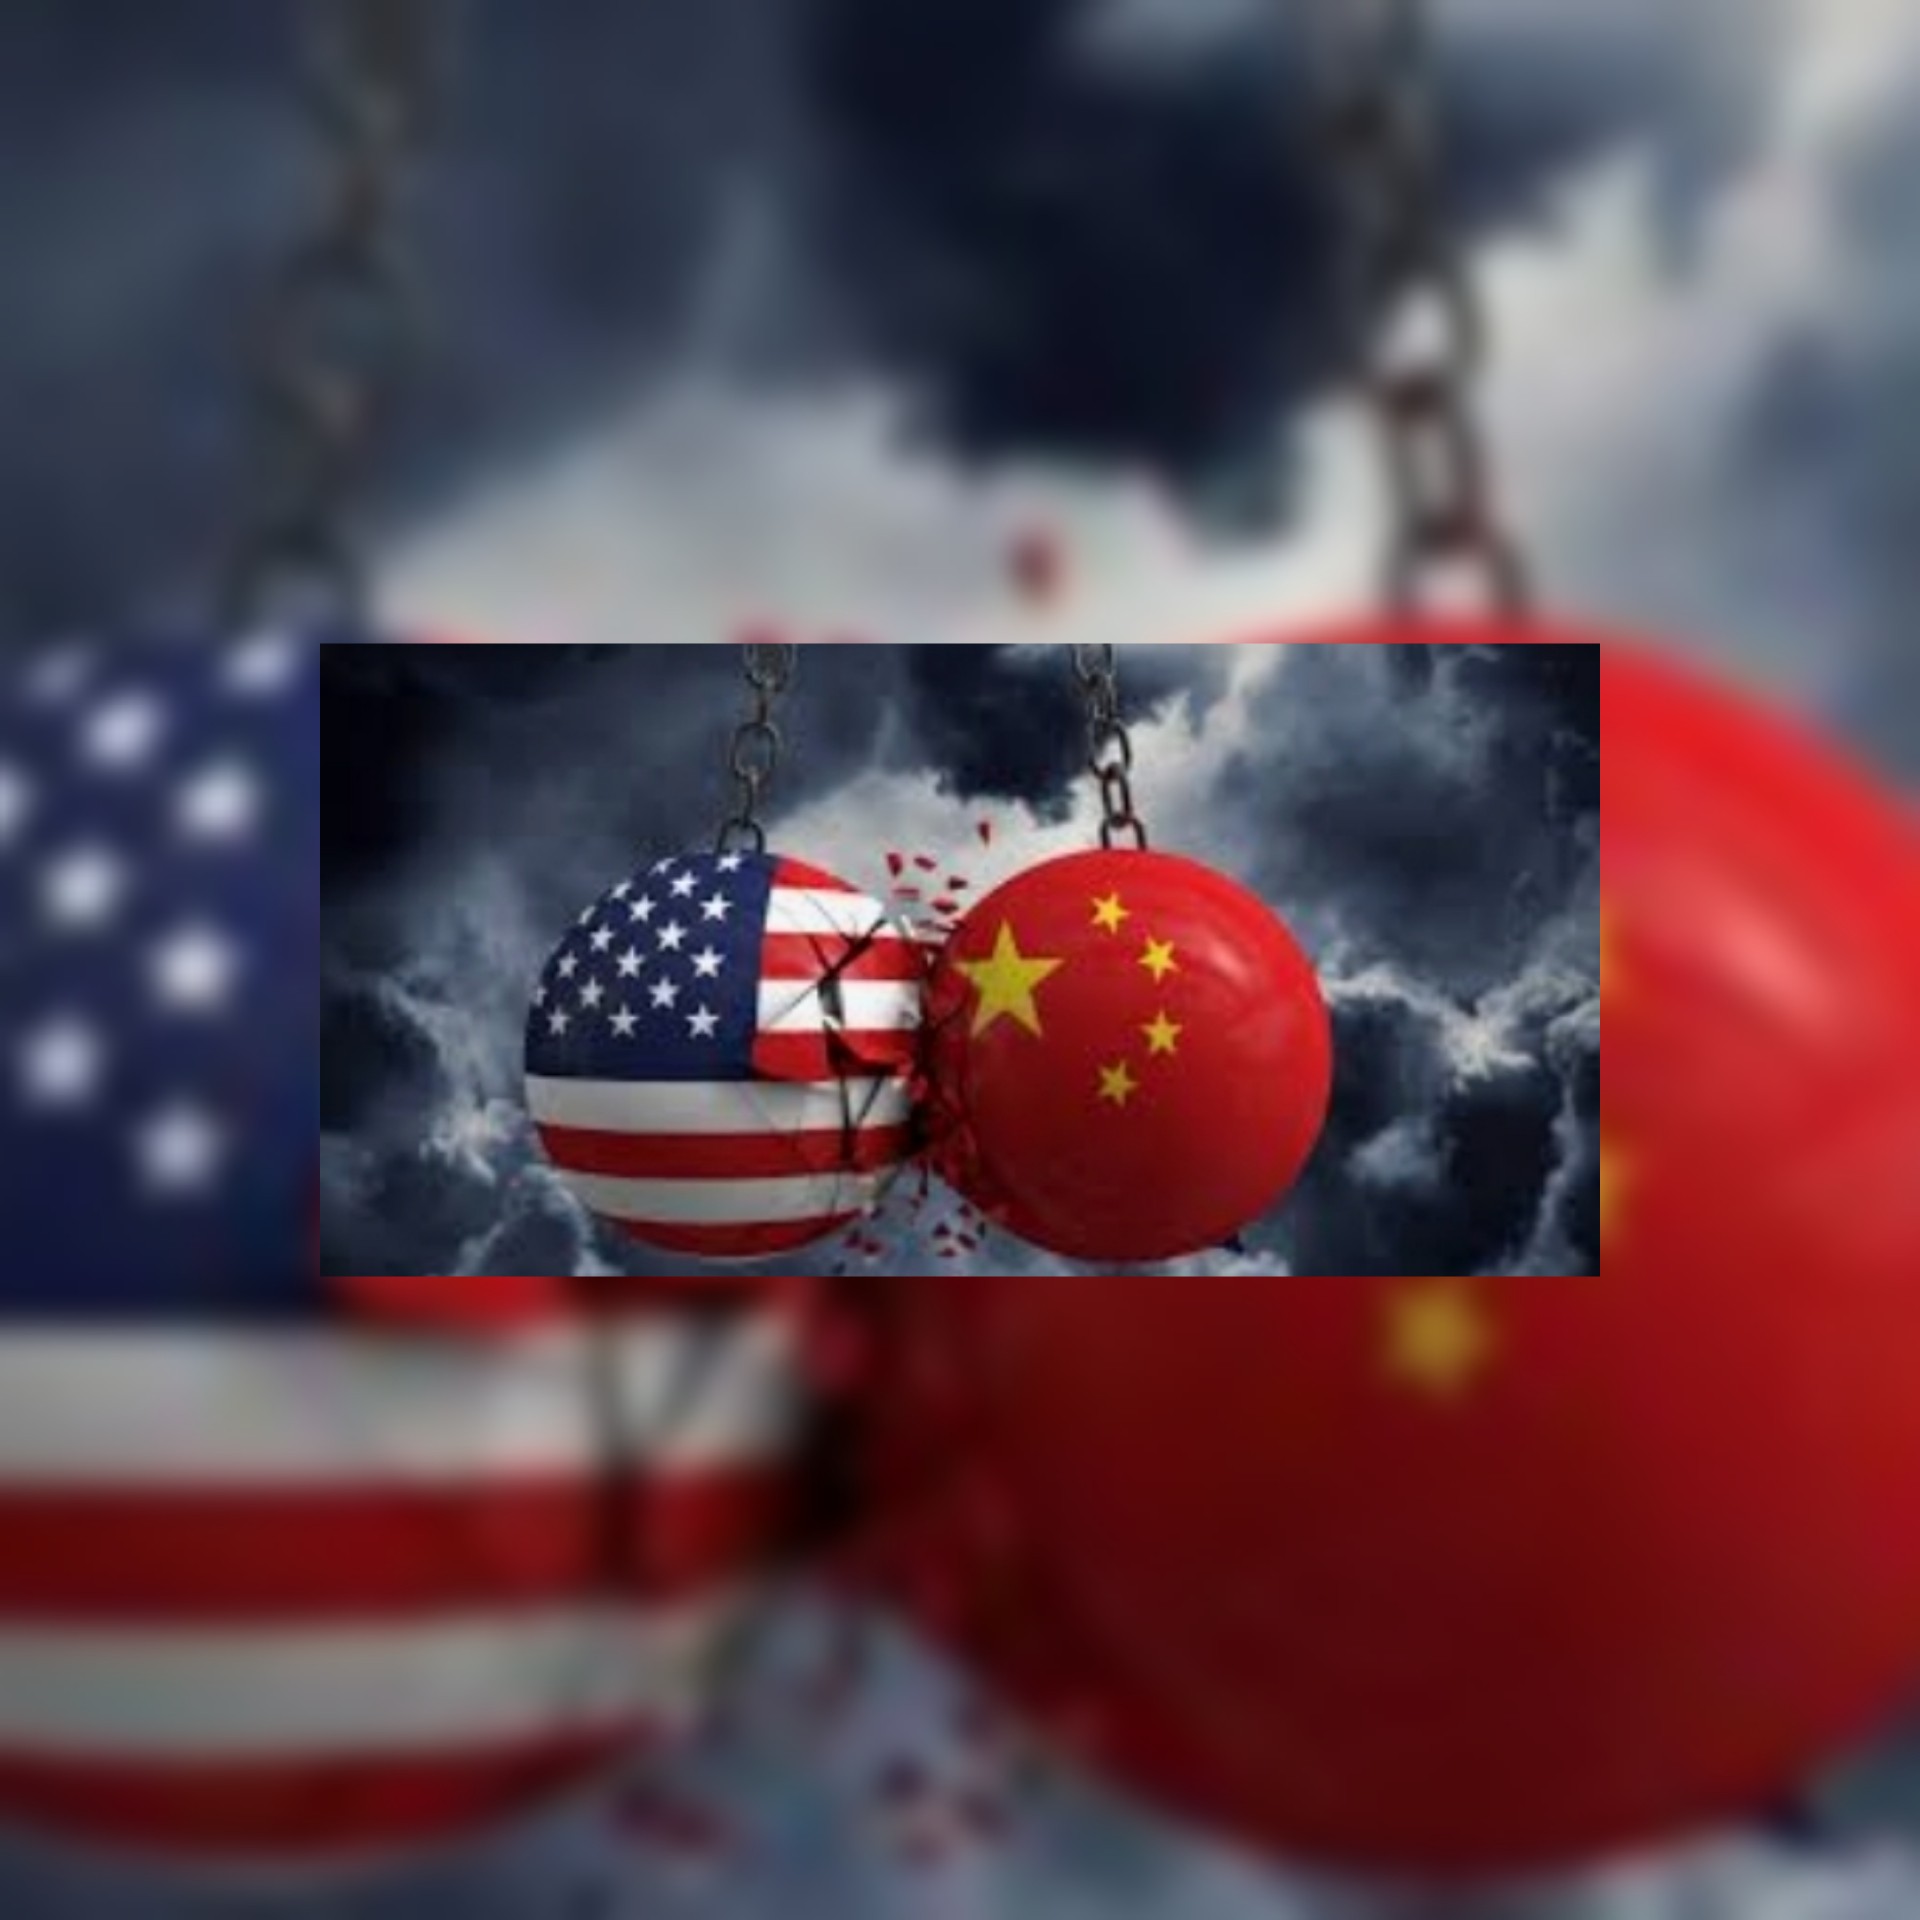 المؤامرة الأمريكية ضد الصين : 1000 دولار لكل تقرير إخباري زائف يستهدف الصين